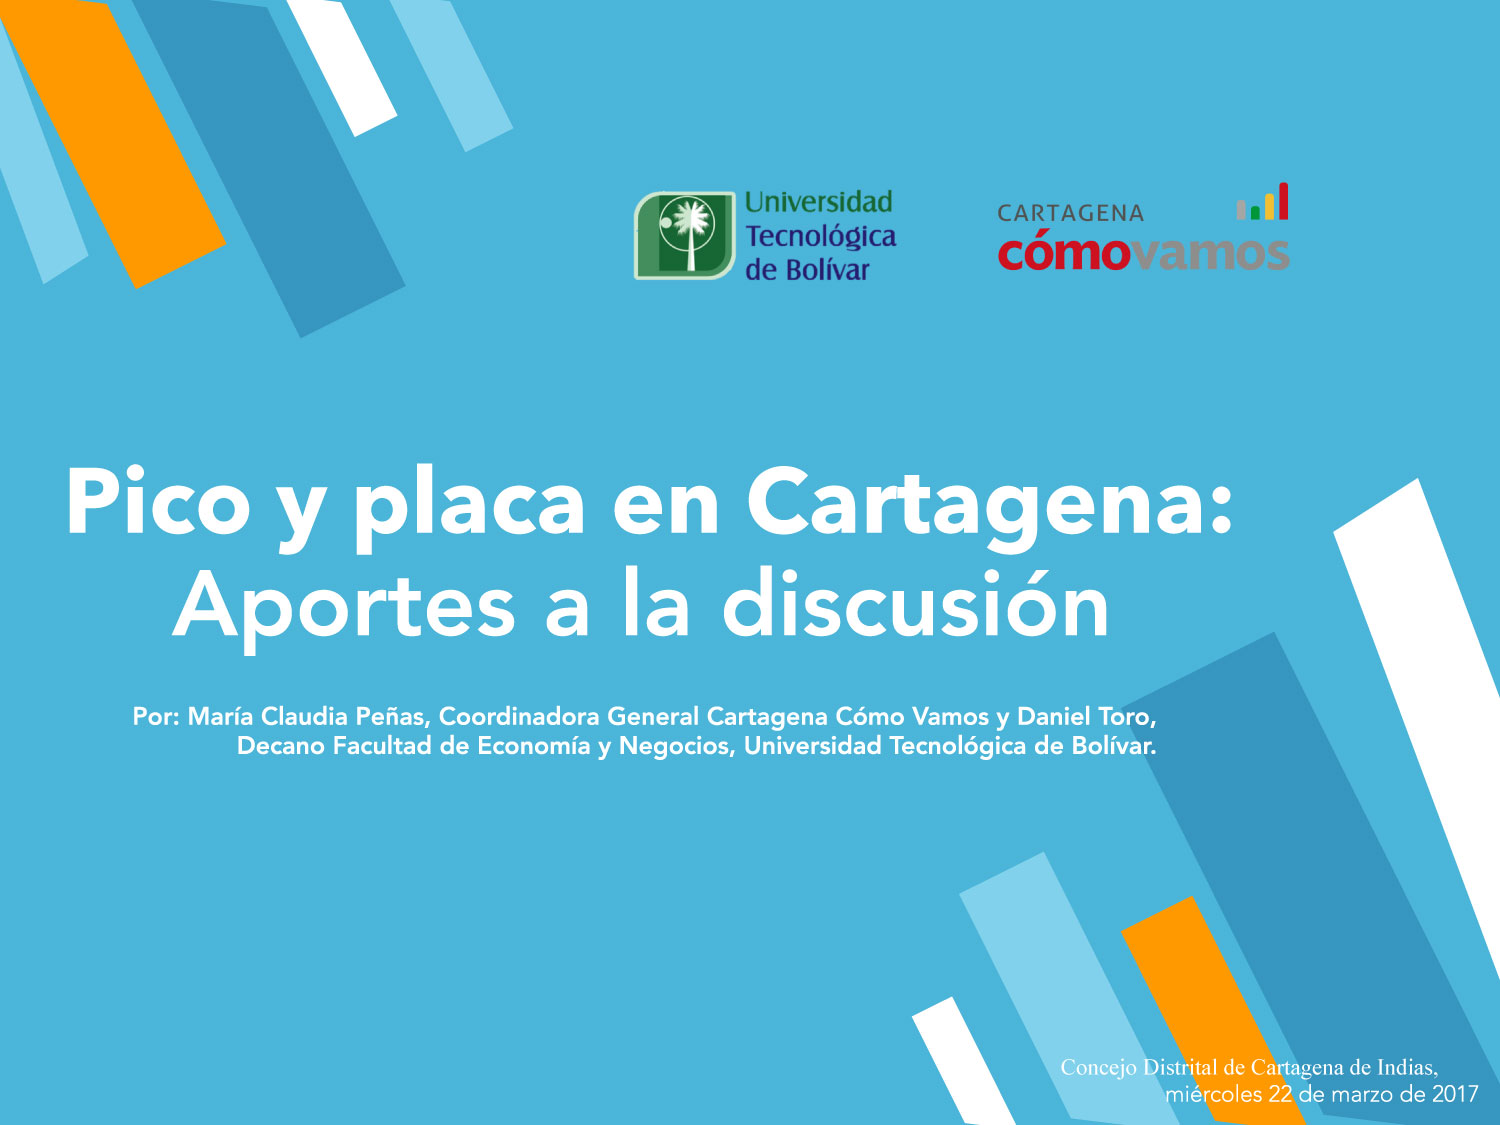 Pico y placa en Cartagena: Aportes a la discusión. Daniel Toro y María Claudia Peñas